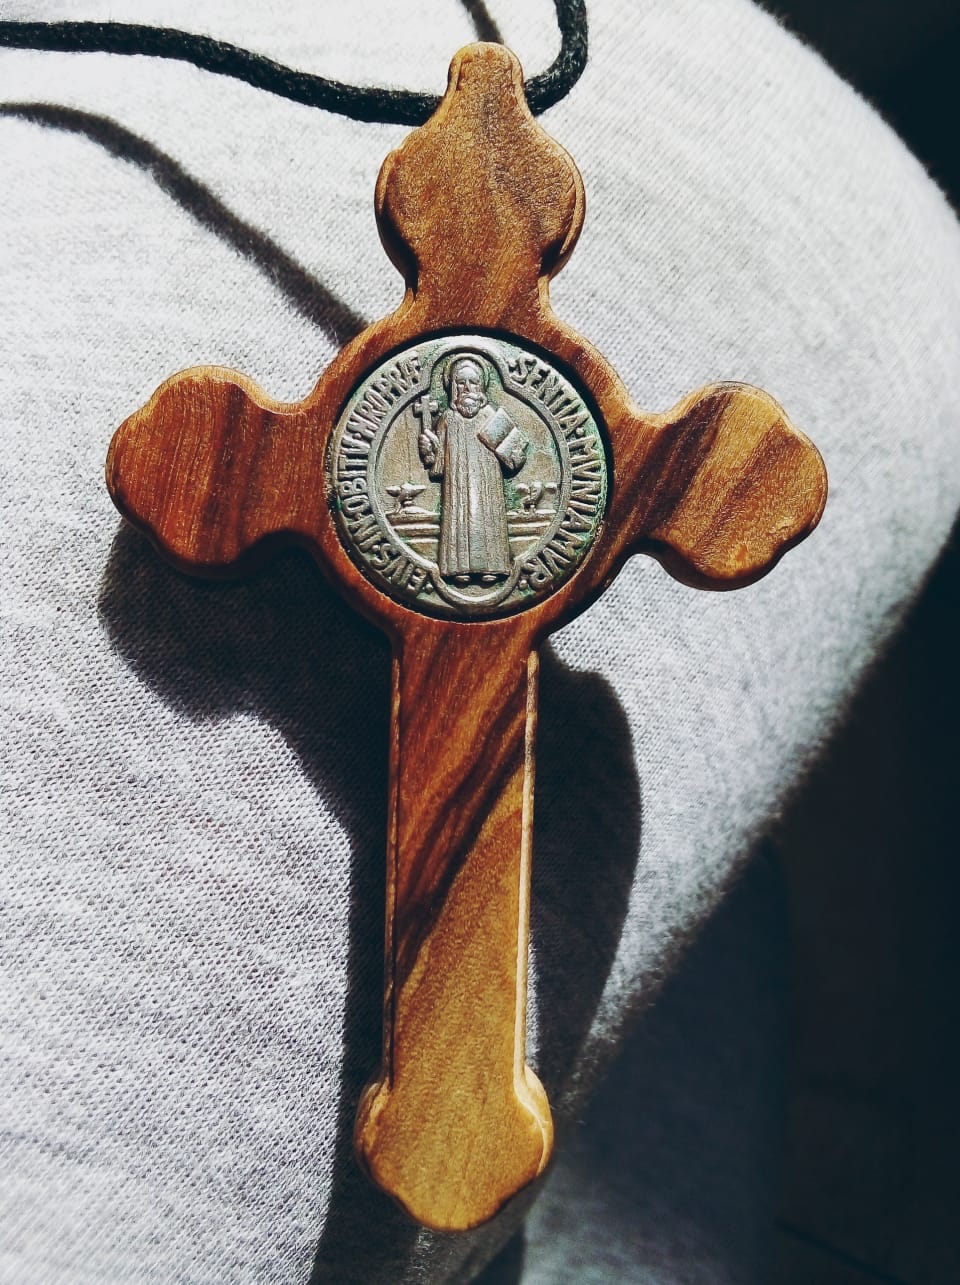 Vendita Croce-Medaglia San Benedetto